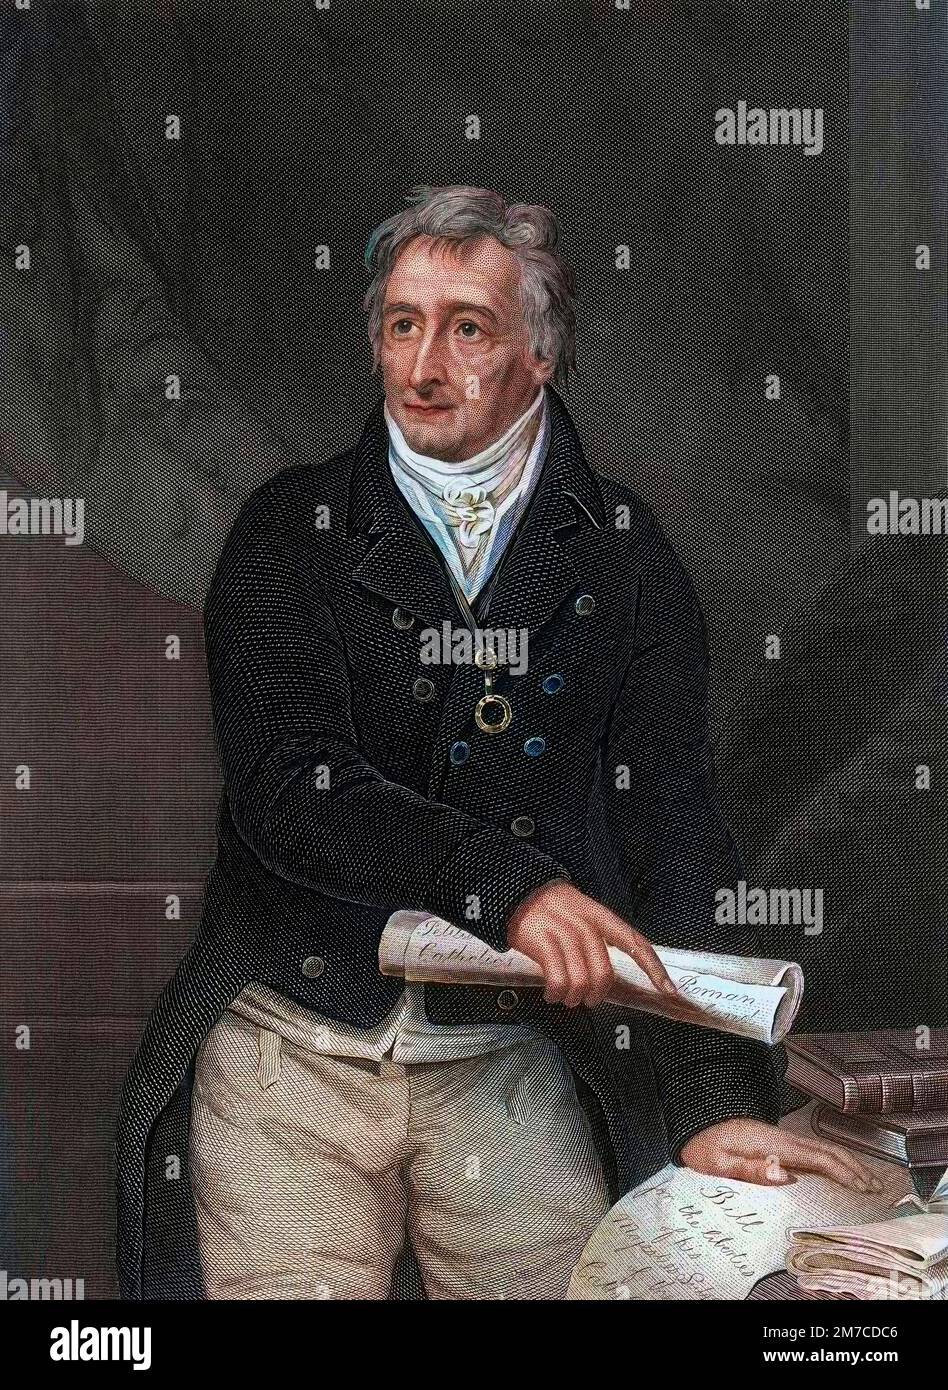 Portrait de Henry Grattan (1746-1820), homme politique irlandais. Gravure d'apres le tableau de Alexander Pope Stockfoto